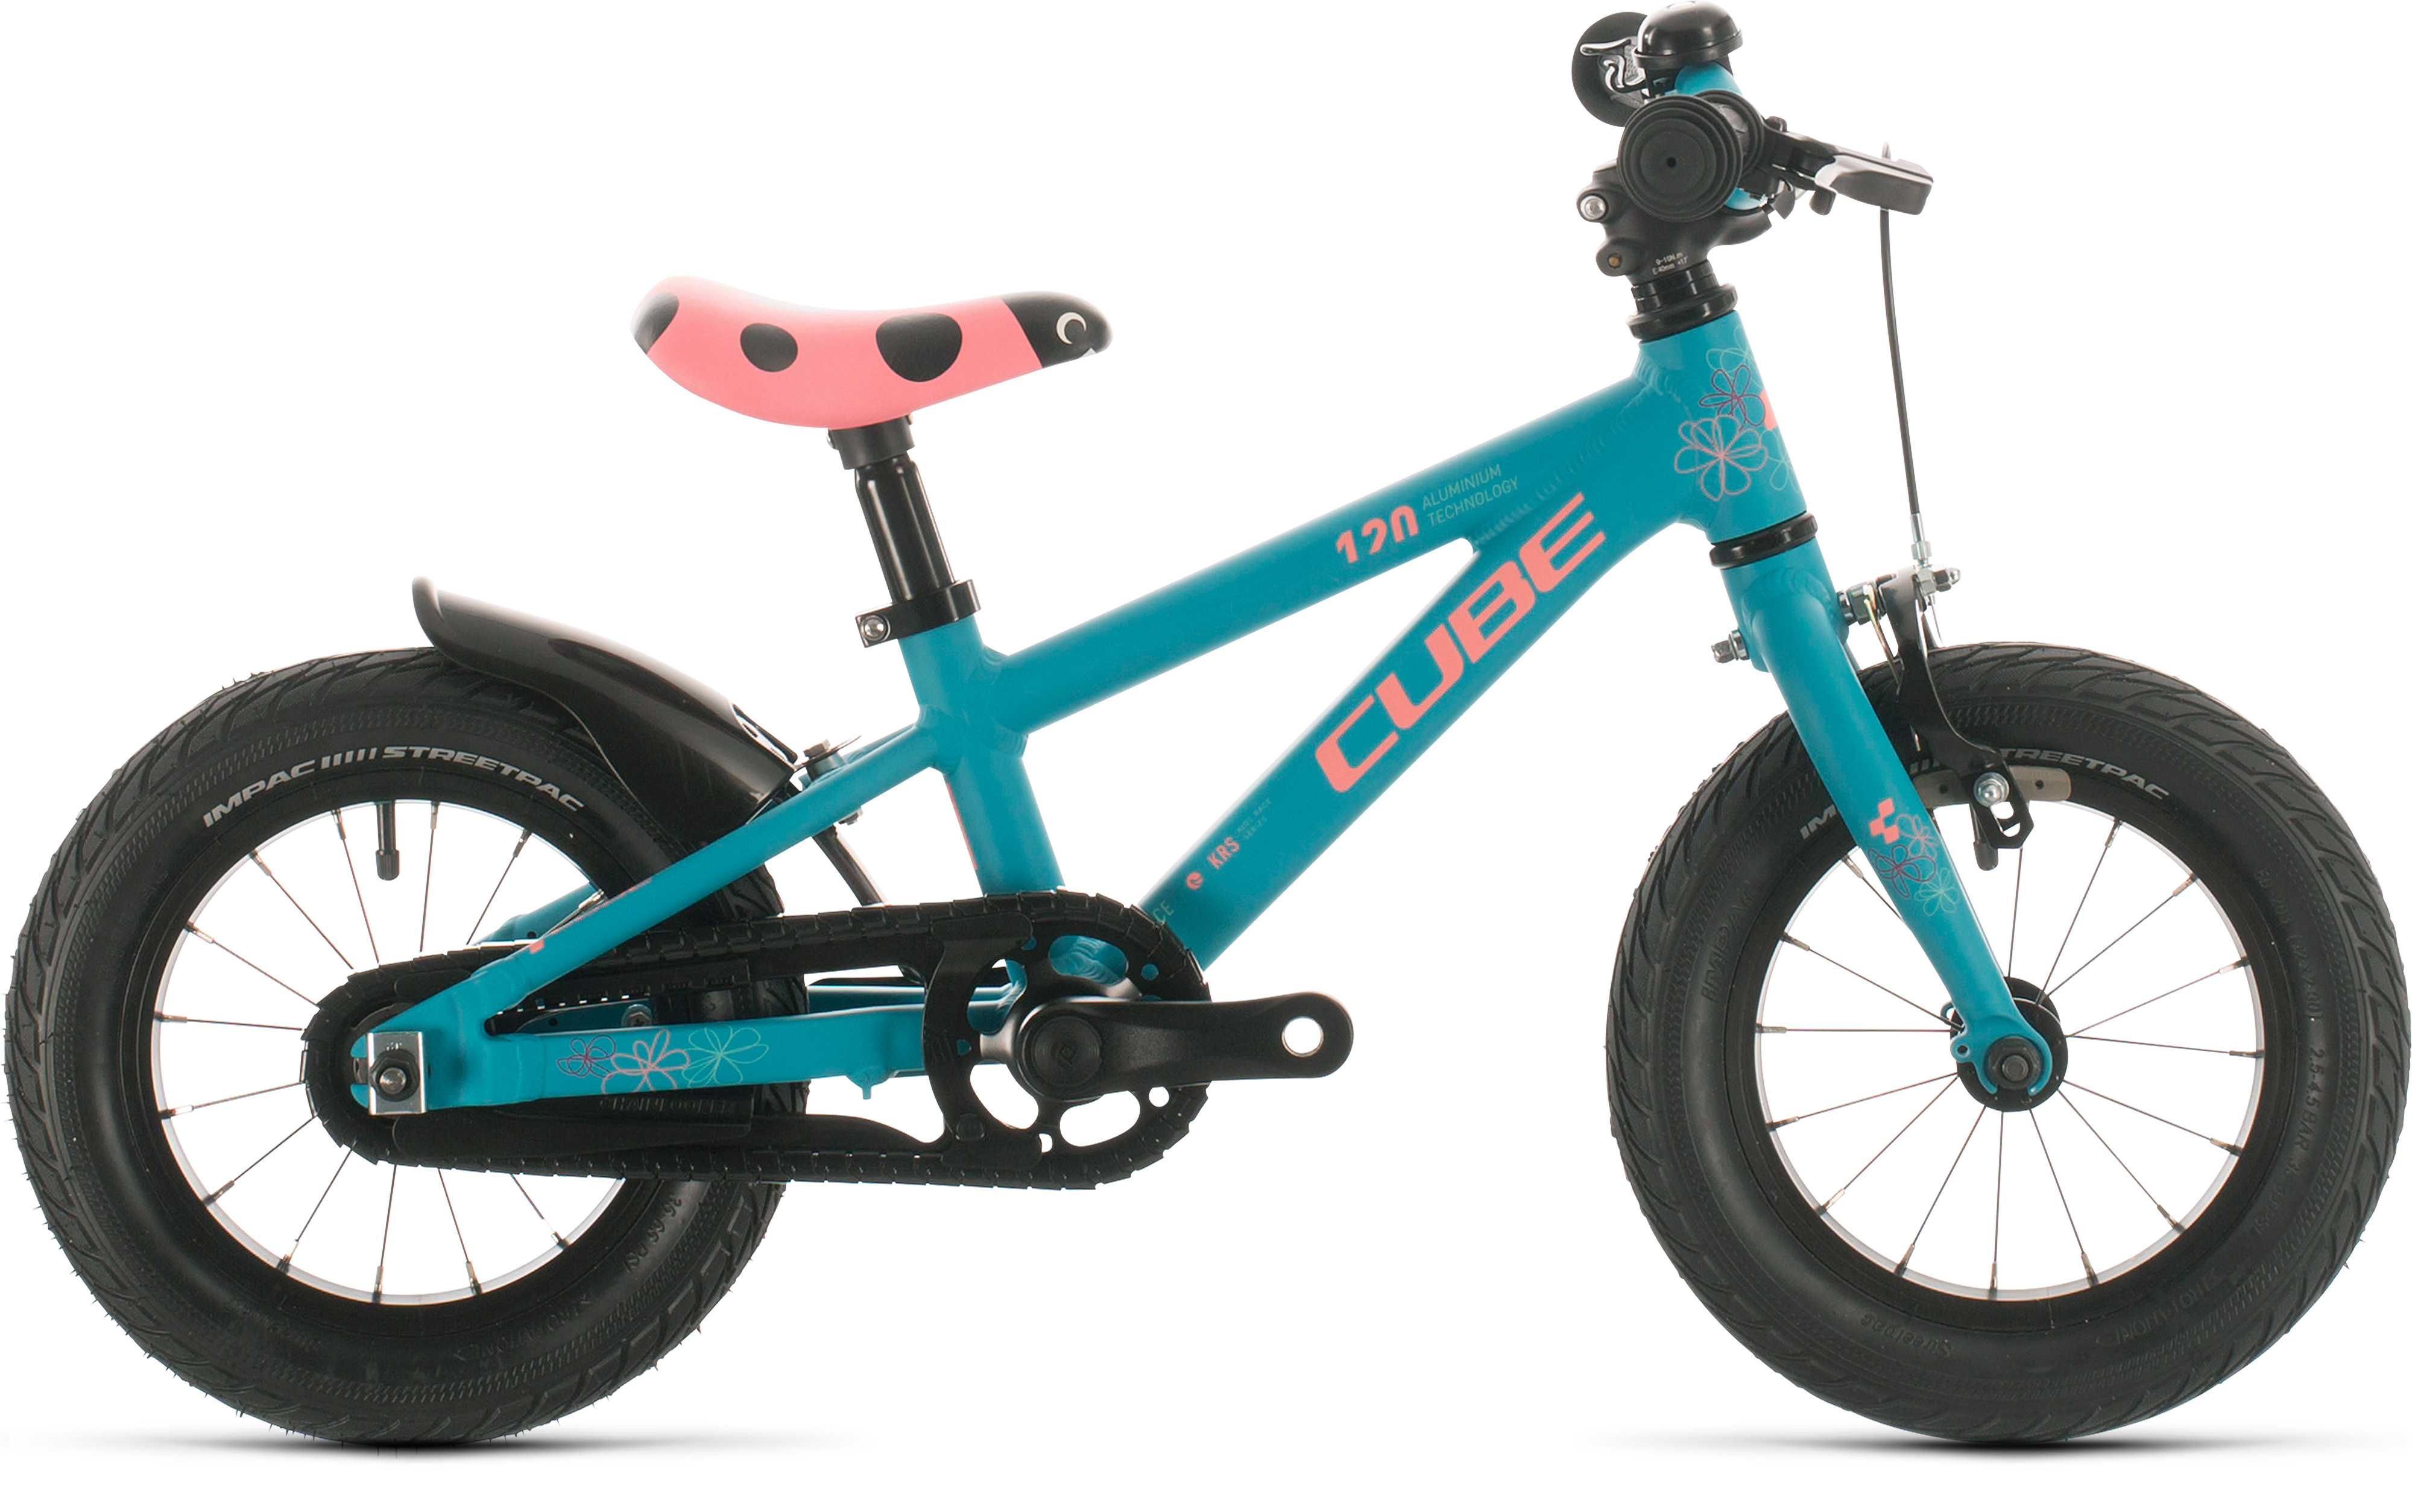  Отзывы о Детском велосипеде Cube Cubie 120 Girl 2020